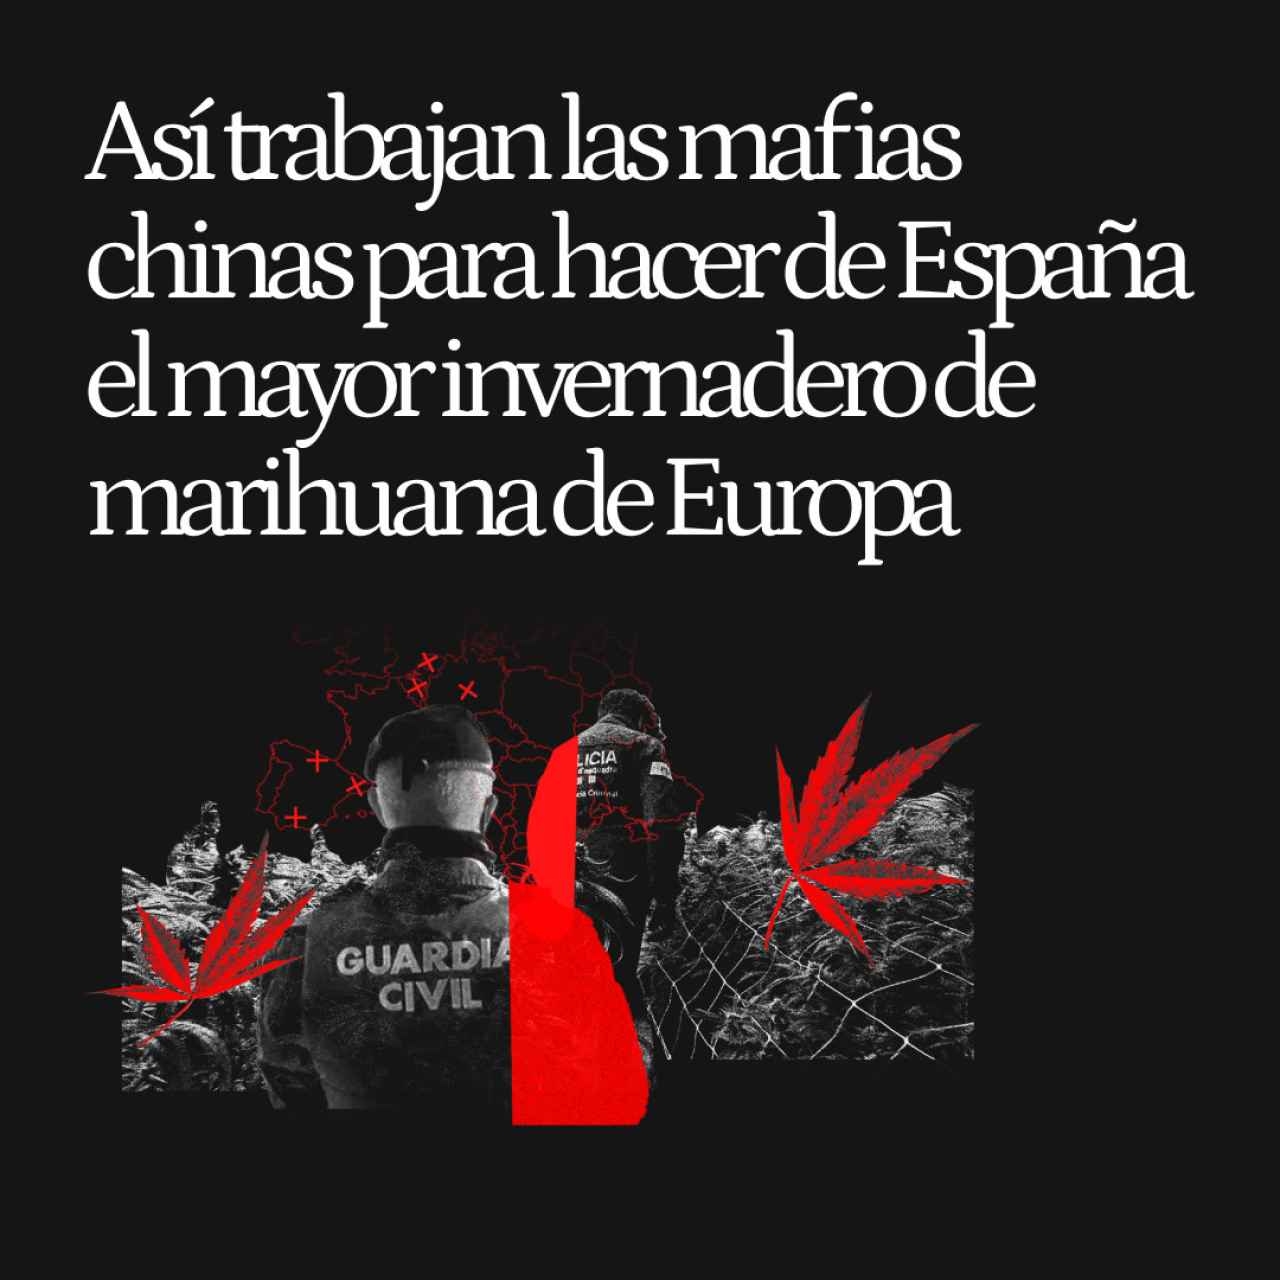 El 'modus operandi' de las mafias internacionales para que España ya sea el mayor invernadero de marihuana de Europa